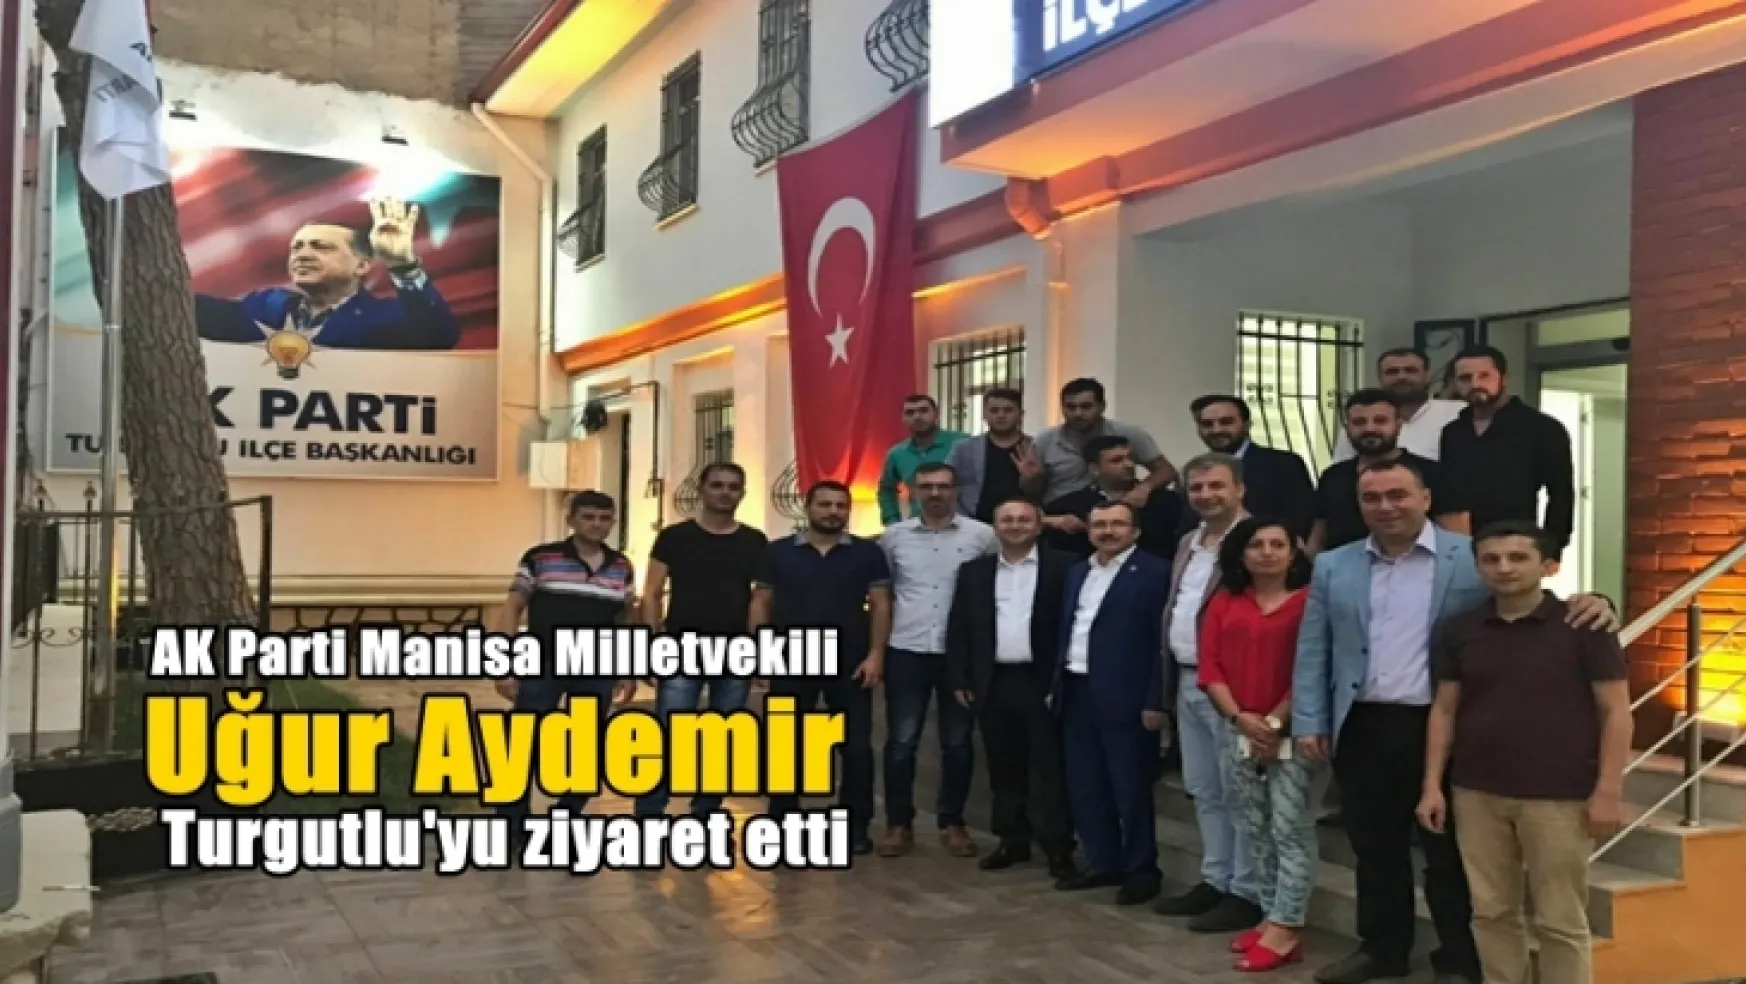 Aydemir Erdoğan'a ve kendisine destek istedi